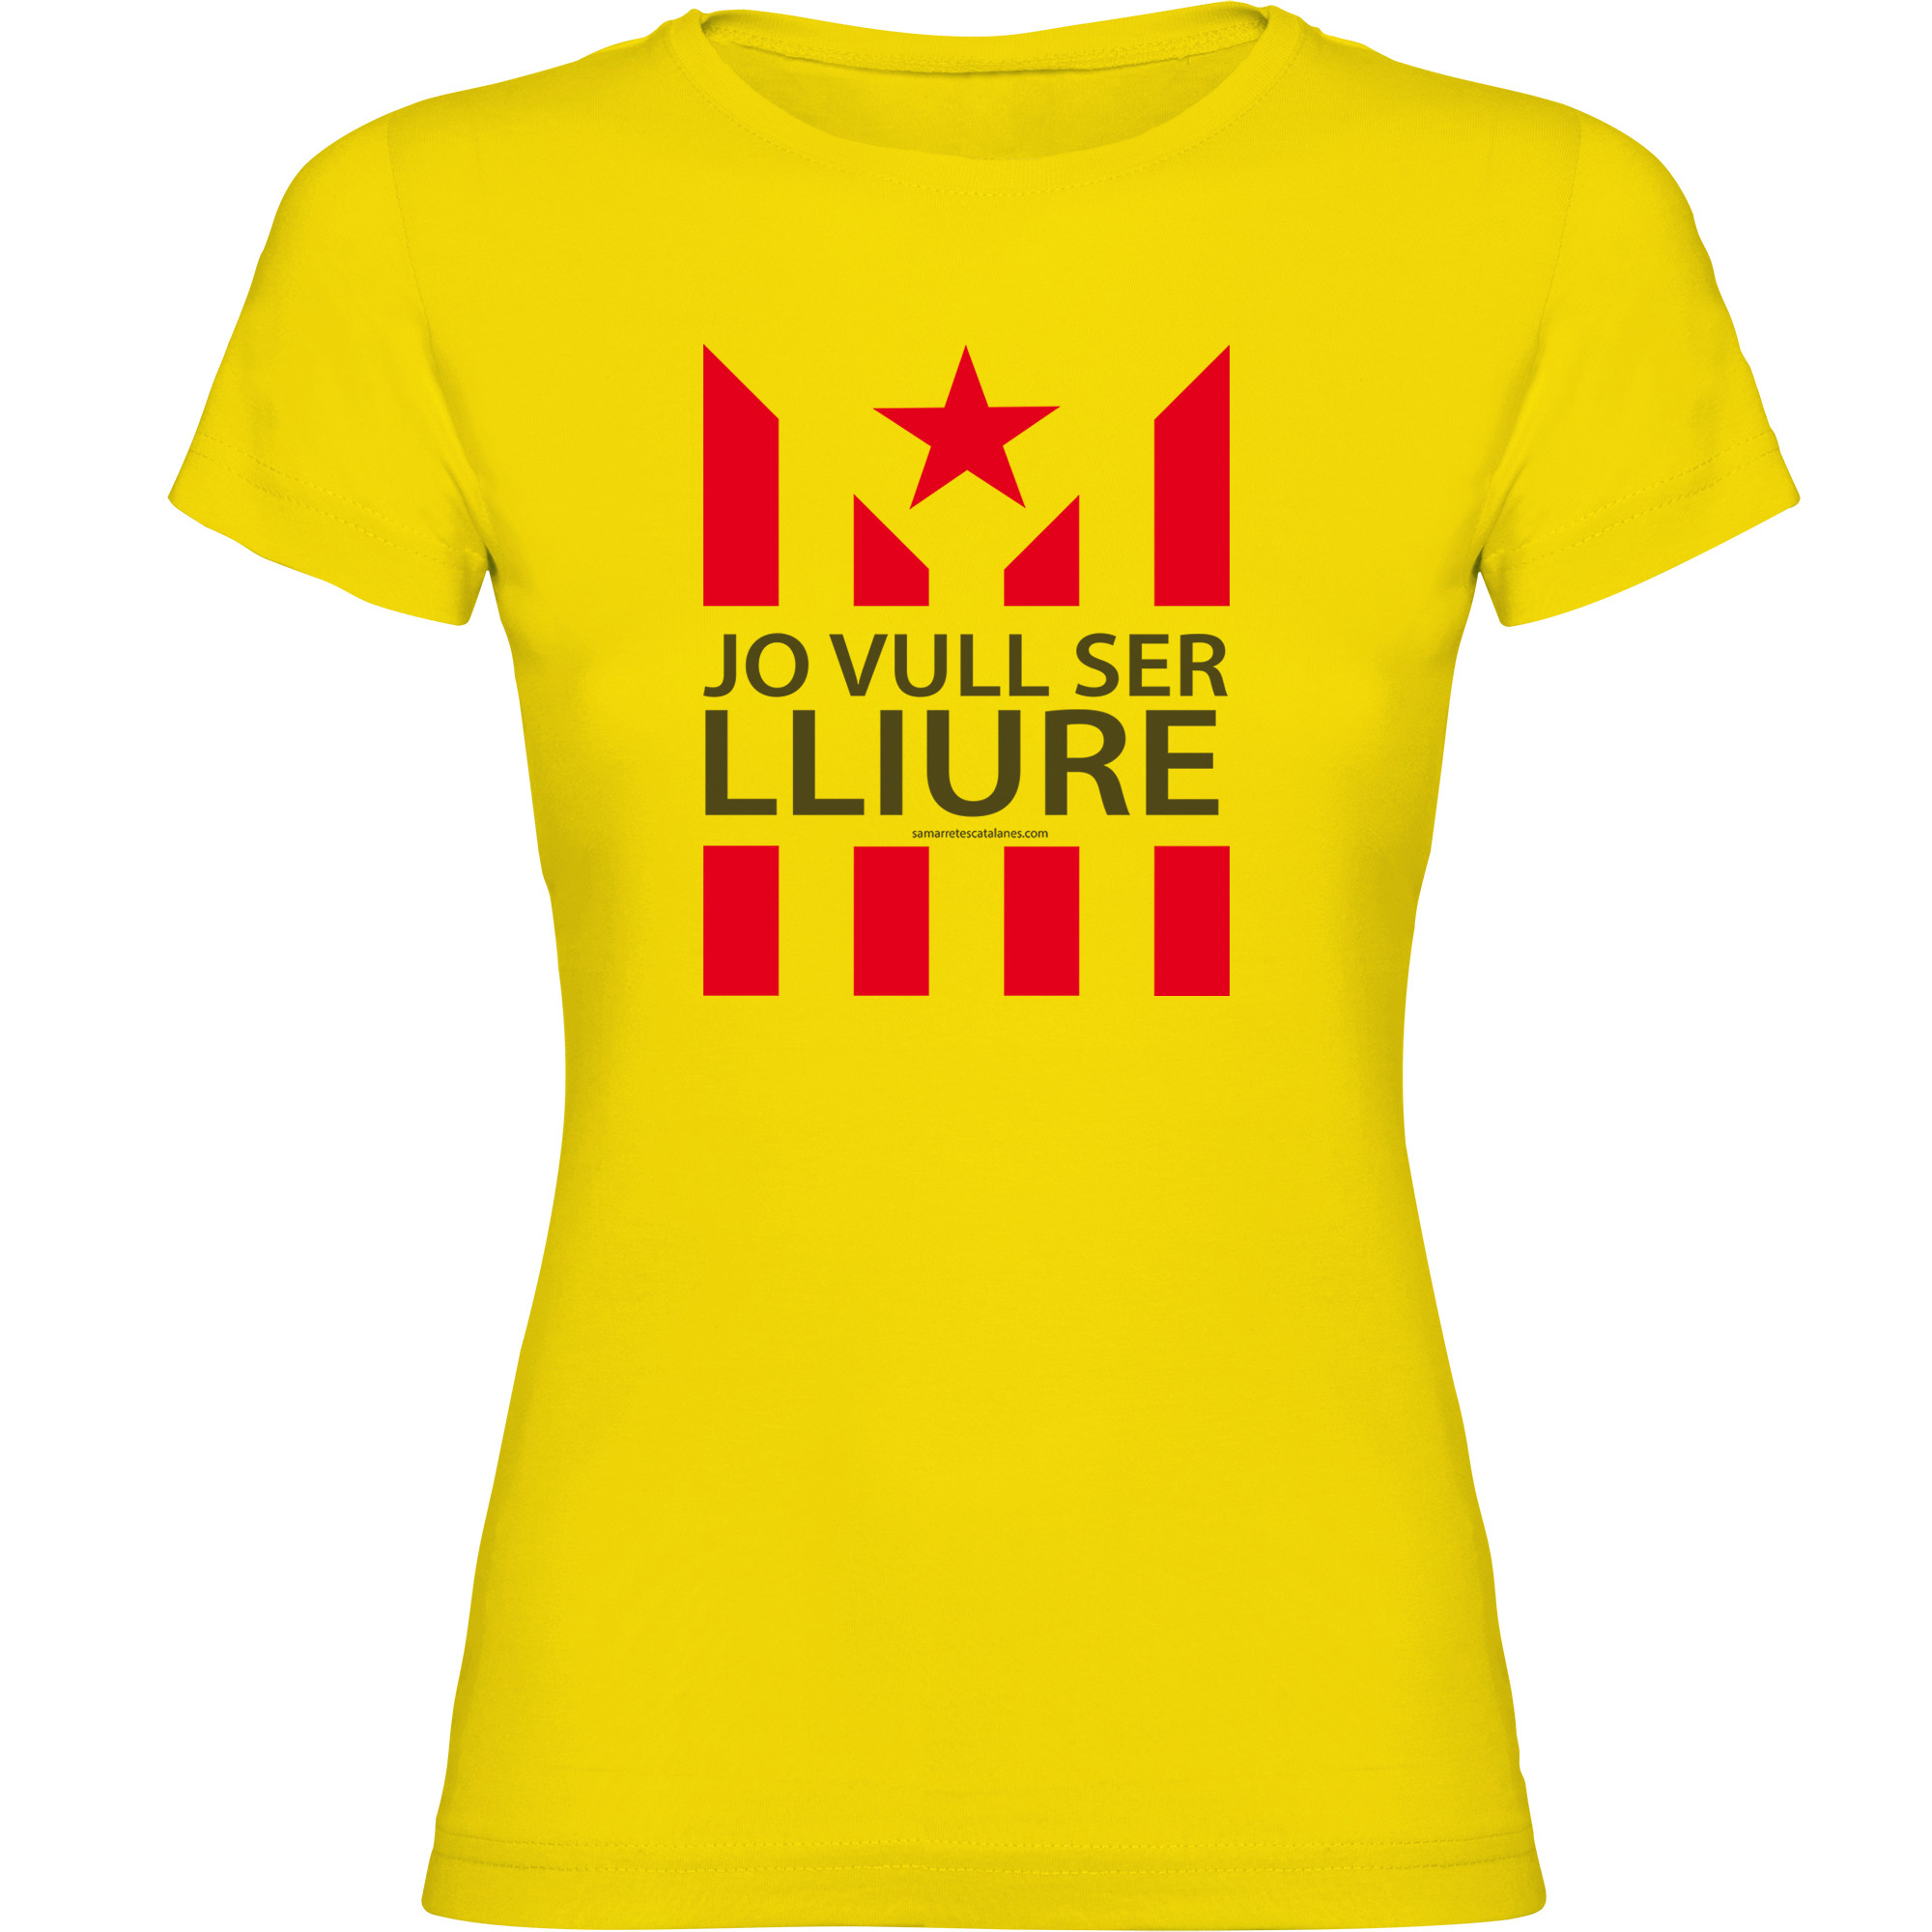 Camiseta Catalunya Jo Vull Ser Lliure Manga Corta Mujer